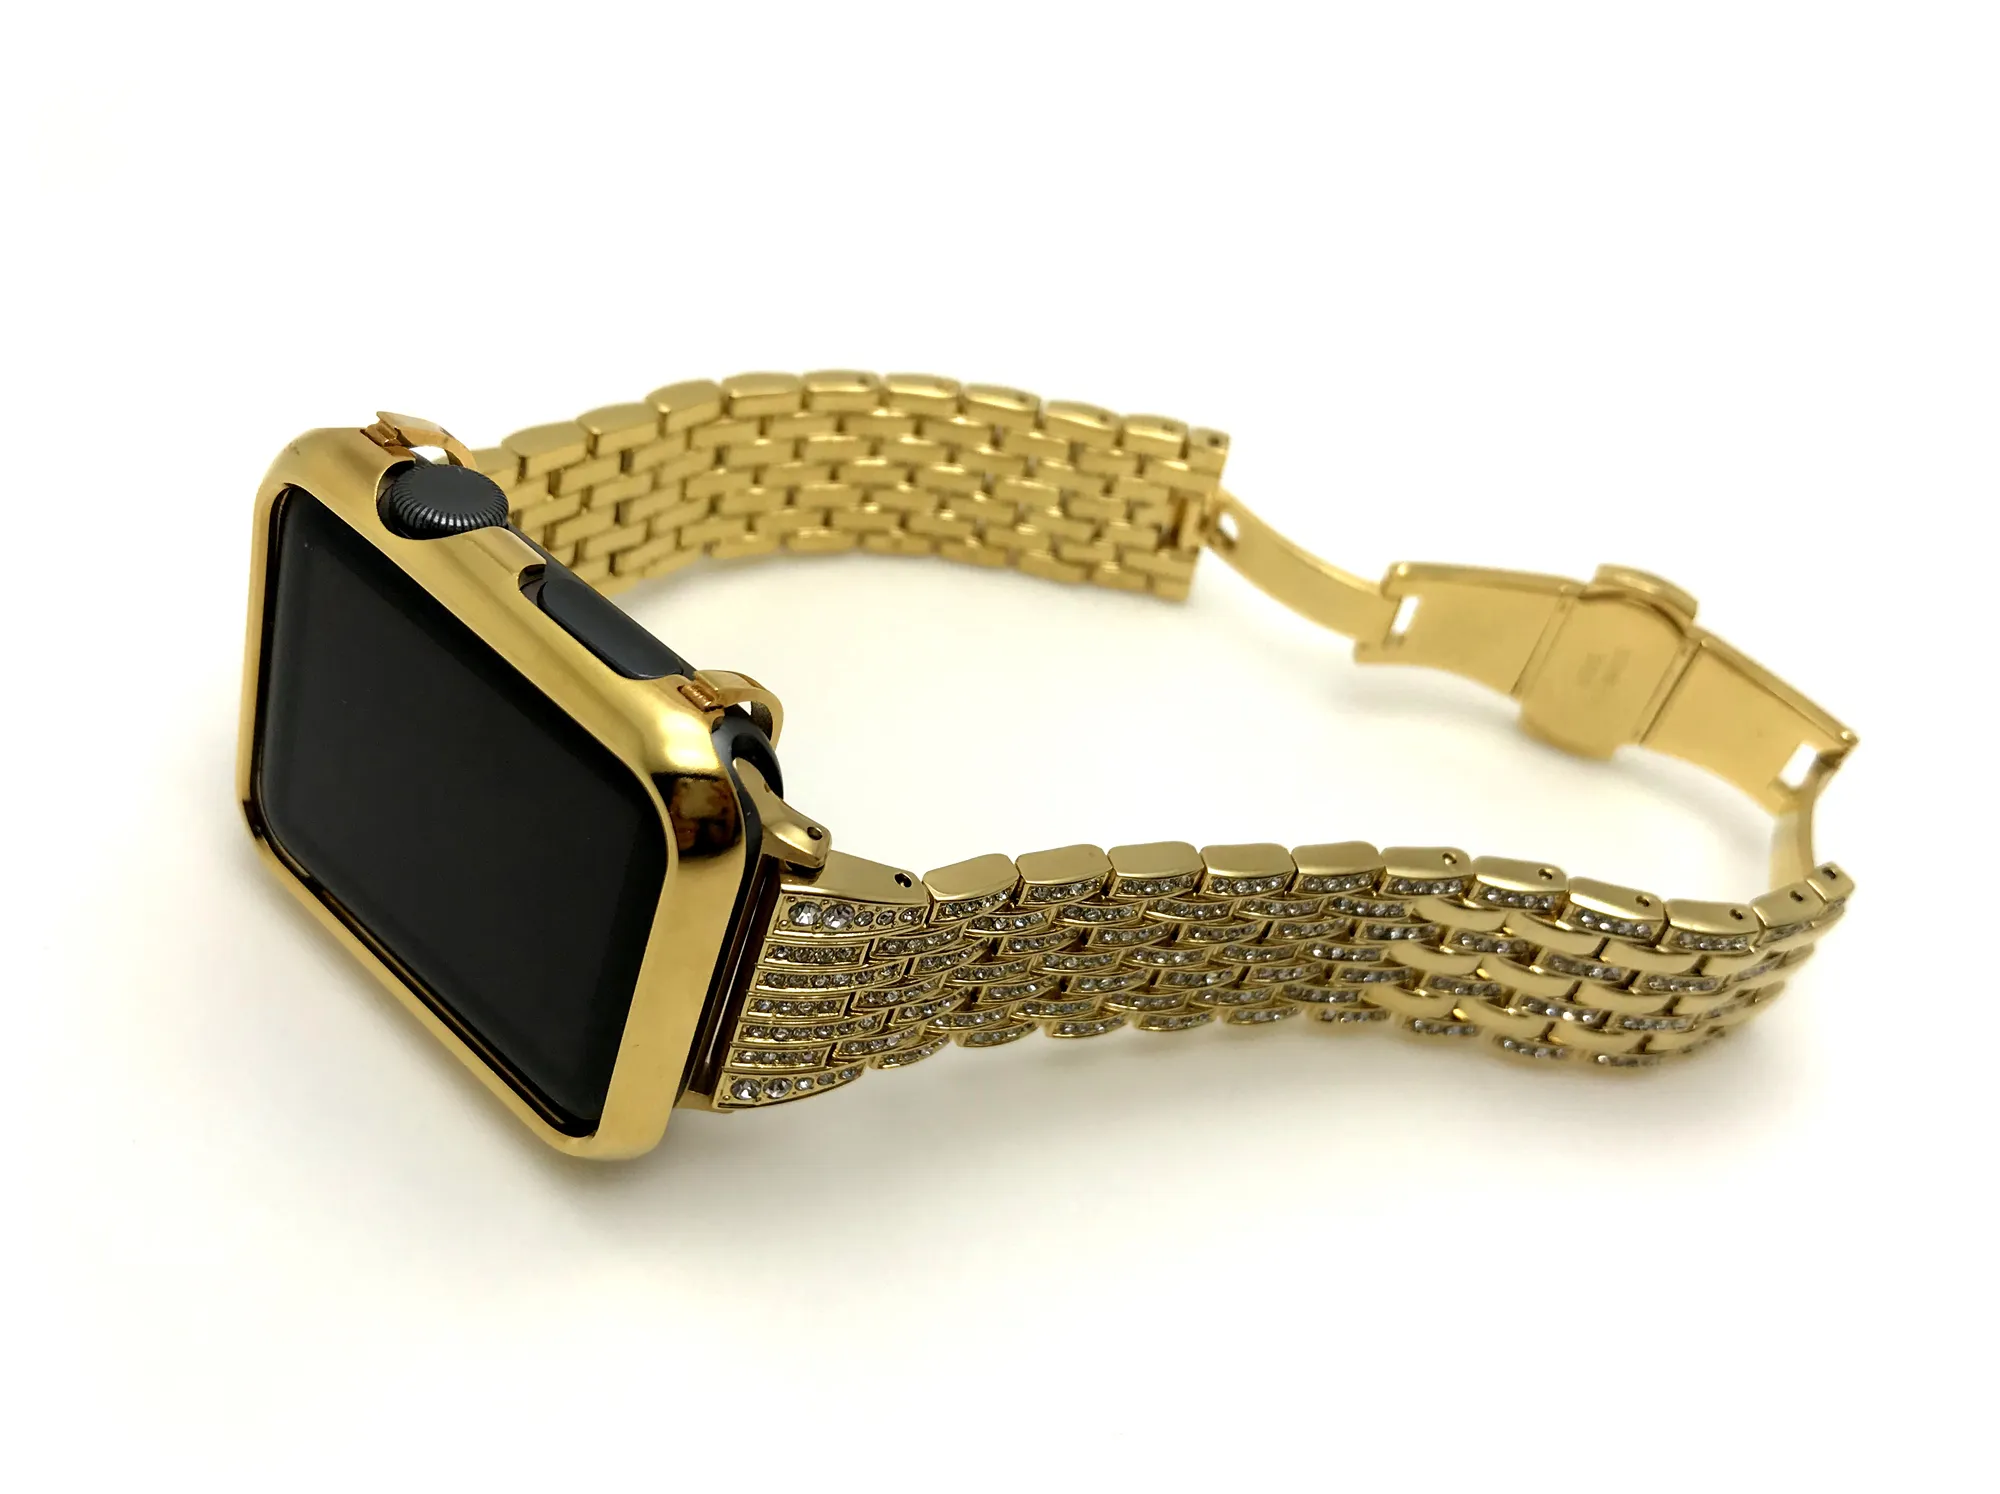 24K Guldpläterad Apple Watch Bezel Cover Case + Guld Diamanter Rostfritt Stål Klockband för Apple Watch S1 / S2 / S3 42mm (2in1 set)